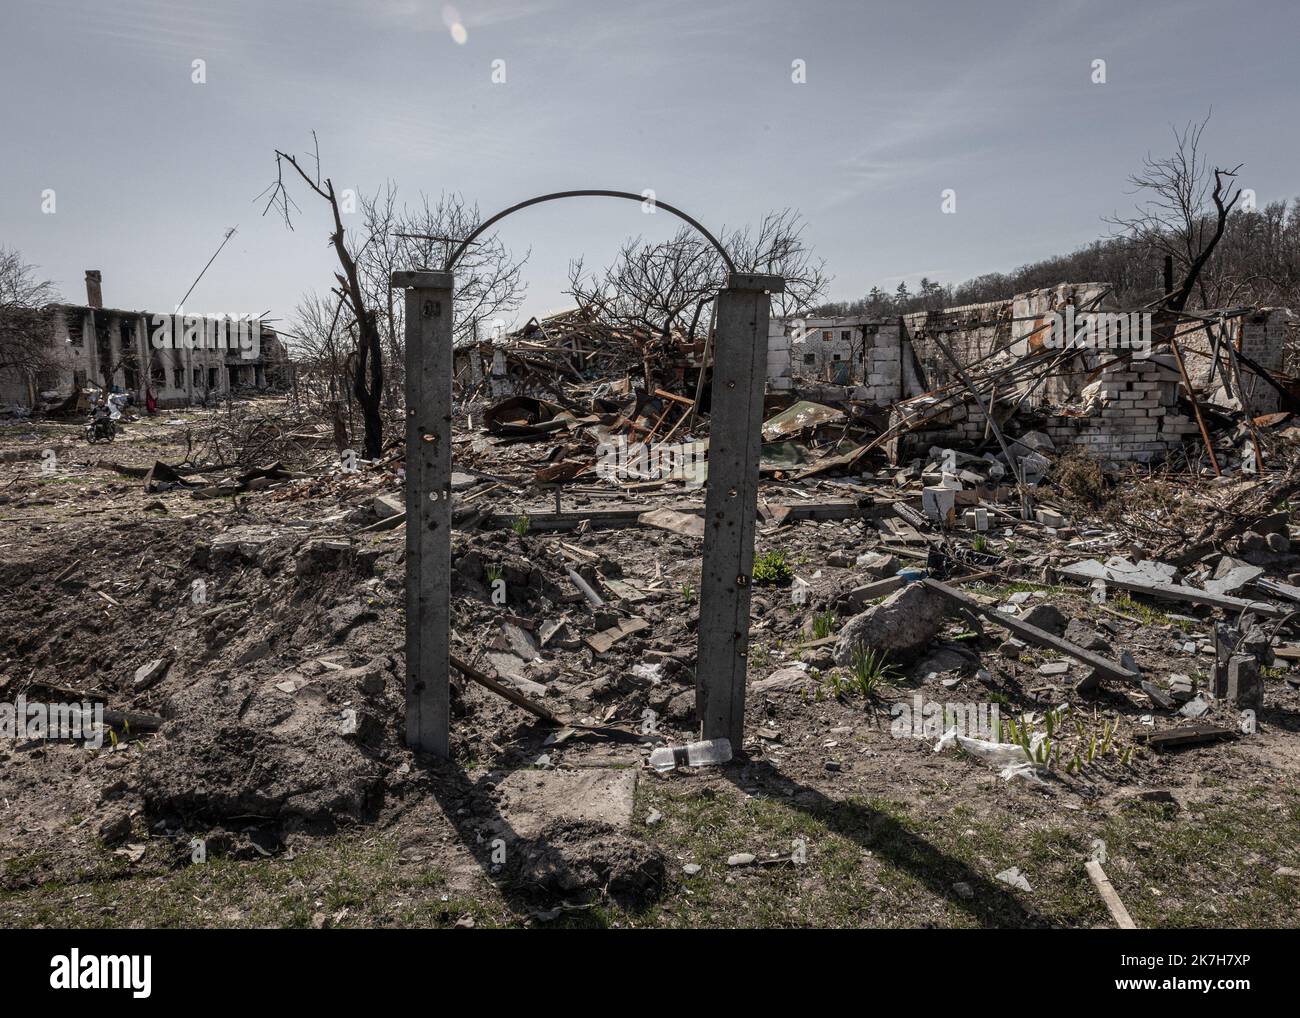 ©Sadak Souici / le Pictorium/MAXPPP - Tchernihiv 15/04/2022 Sadak Souici / le Pictorium - 15/4/2022 - Ucraina / Tchernihiv - Les restes d'une maison touchee par d'intenses bombardements dans le quartier de Novoselivka, a Tchernihiv. Tchernihiv, au nord est de Kyiv proche de la frontiere avec la bielorussie, a subit de plein fouet l'avancee russe. Bombardee de maniere intensive, les envahisseurs tenterent dix fois, en vain, d'occuper la ville. Une operation qui couta tres cher a la ville, donnant lieu a des quartiers entierement detruits, des immeubles eventres, et des vies brisees. Selon le go Foto Stock